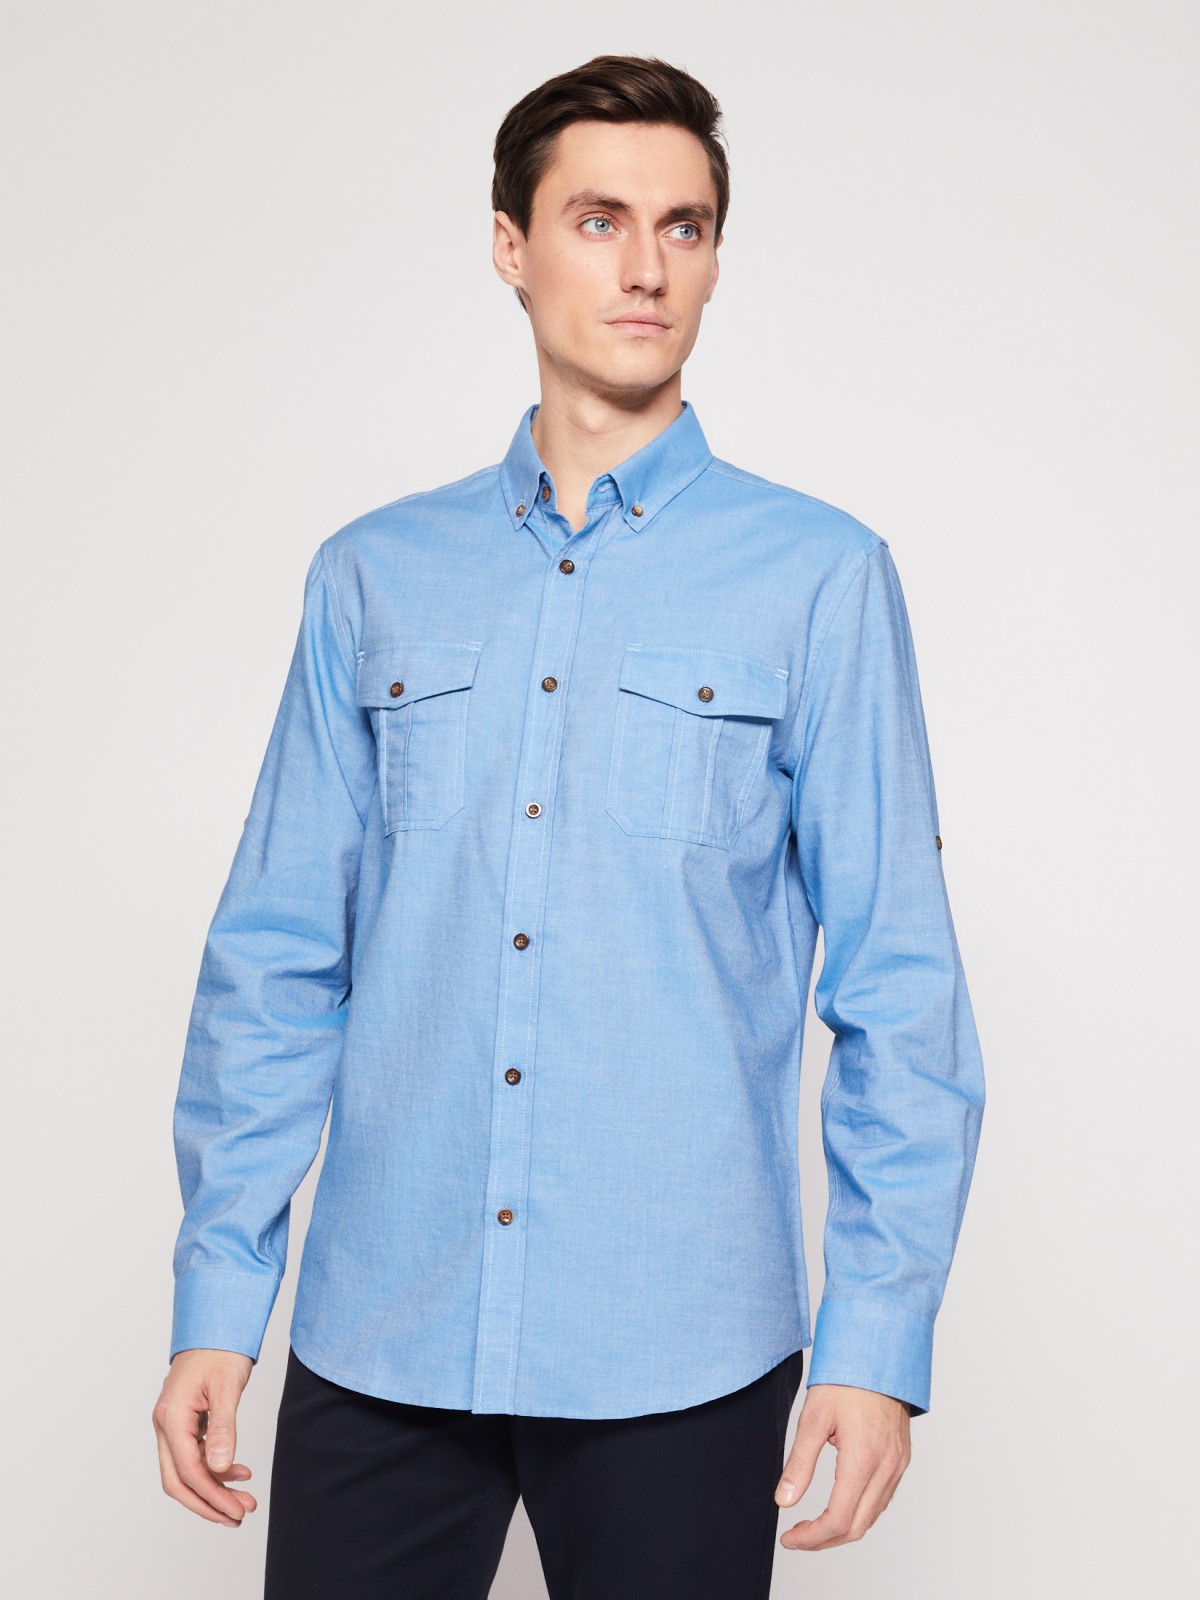 Хлопковая рубашка с длинным рукавом zolla 012122159063, цвет голубой, размер M - фото 2